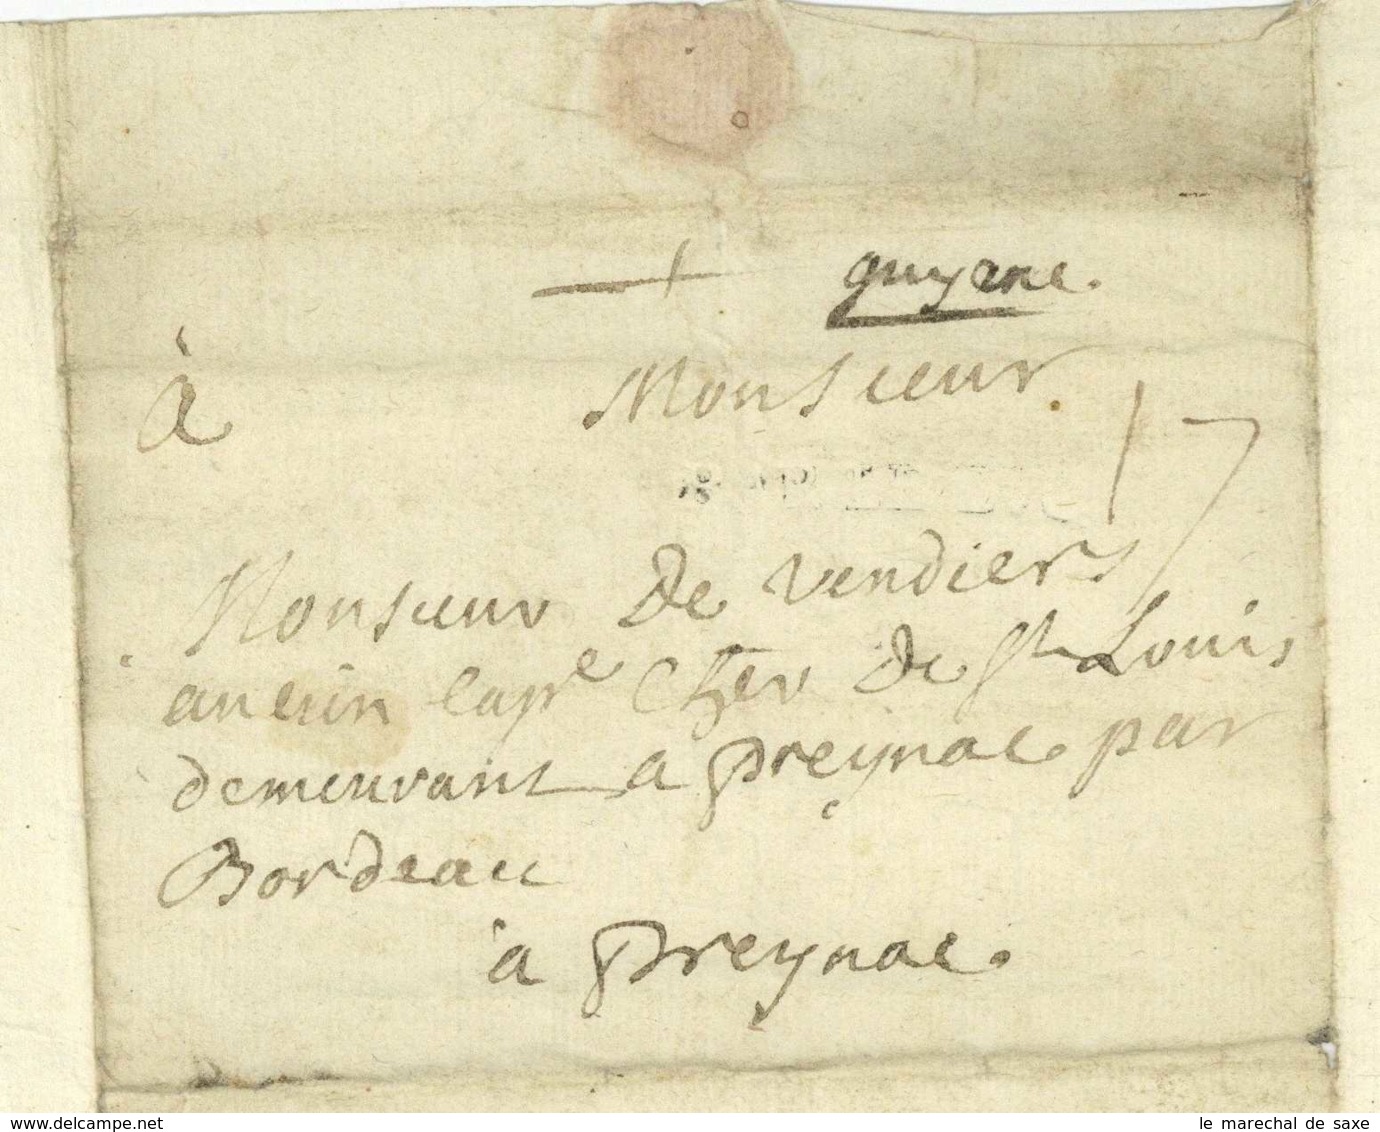 BAR-LE-DUC 1764 LAS DU FOURAIRE A M De Vendier Chevalier De Saint Louis A ? Guyenne - Manuscripts